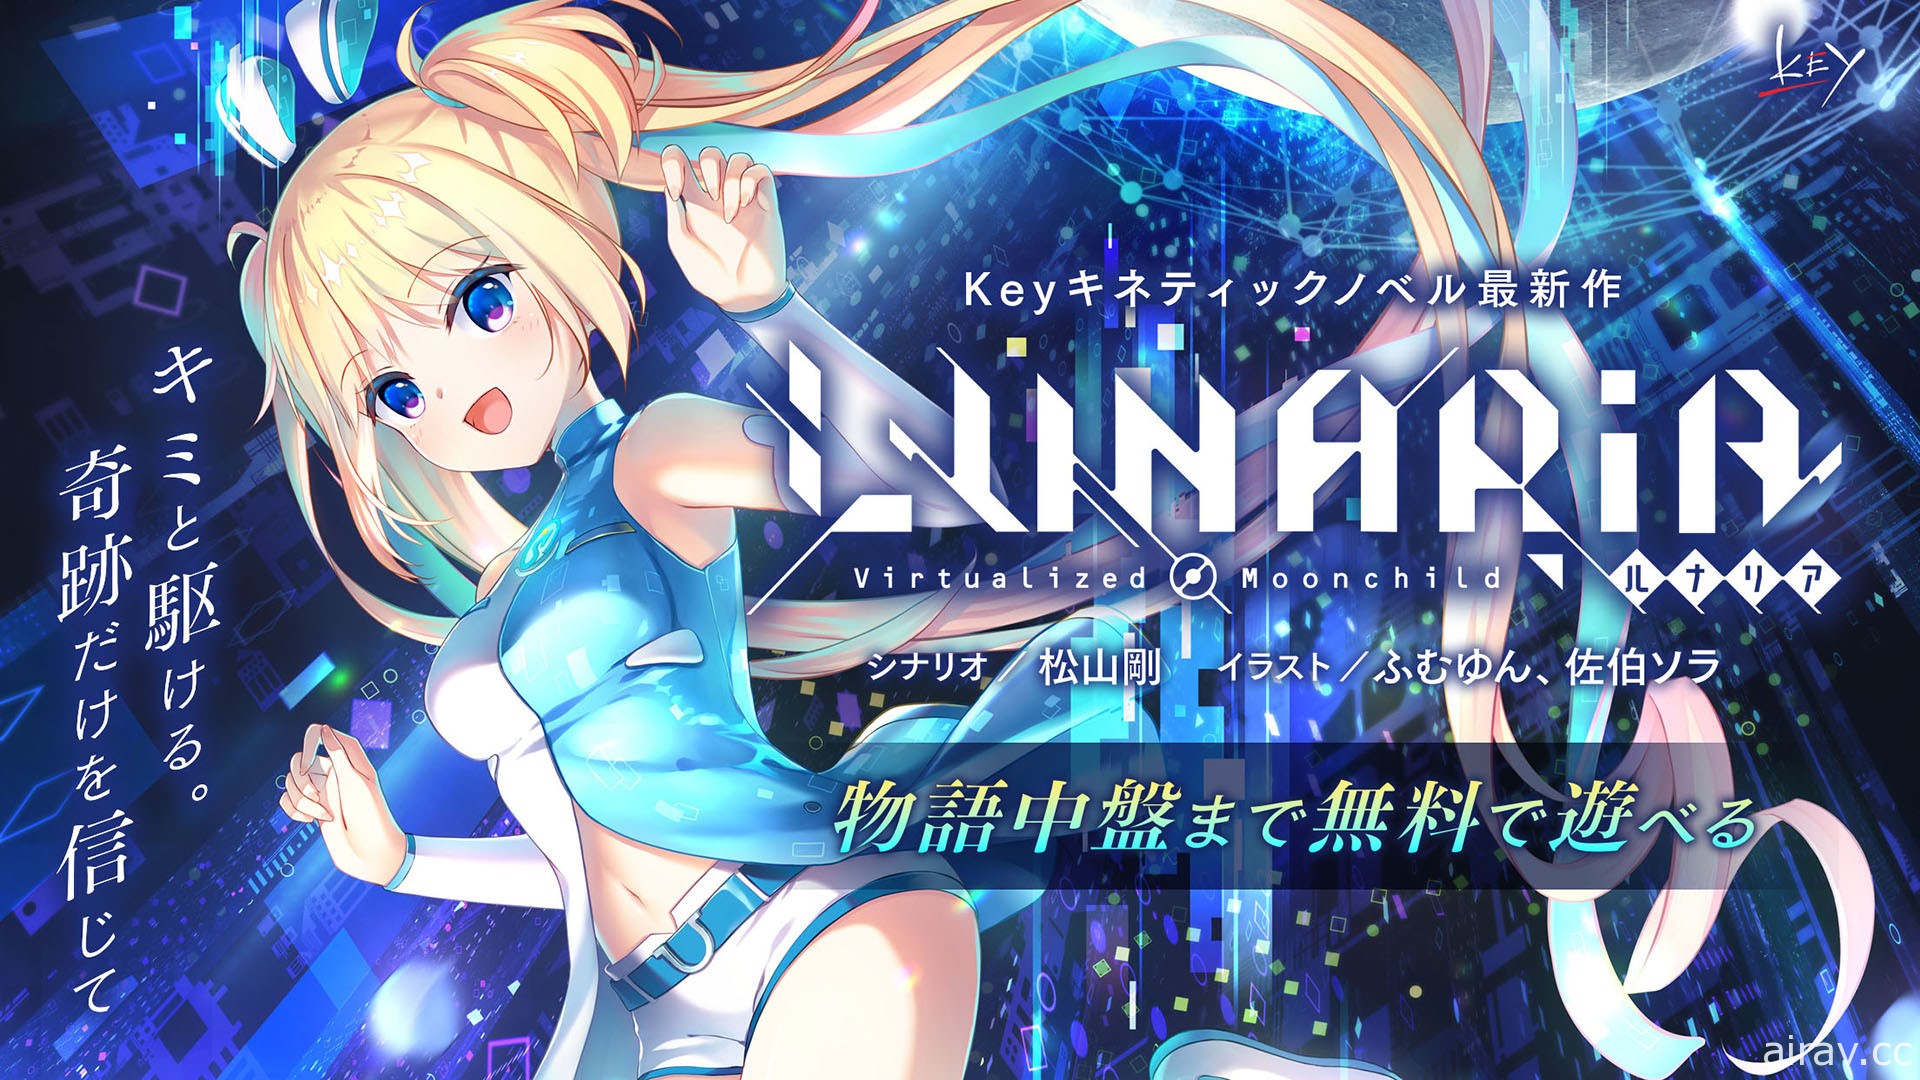 视觉小说游戏《LUNARiA -Virtualized Moonchild-》手机版于今日推出